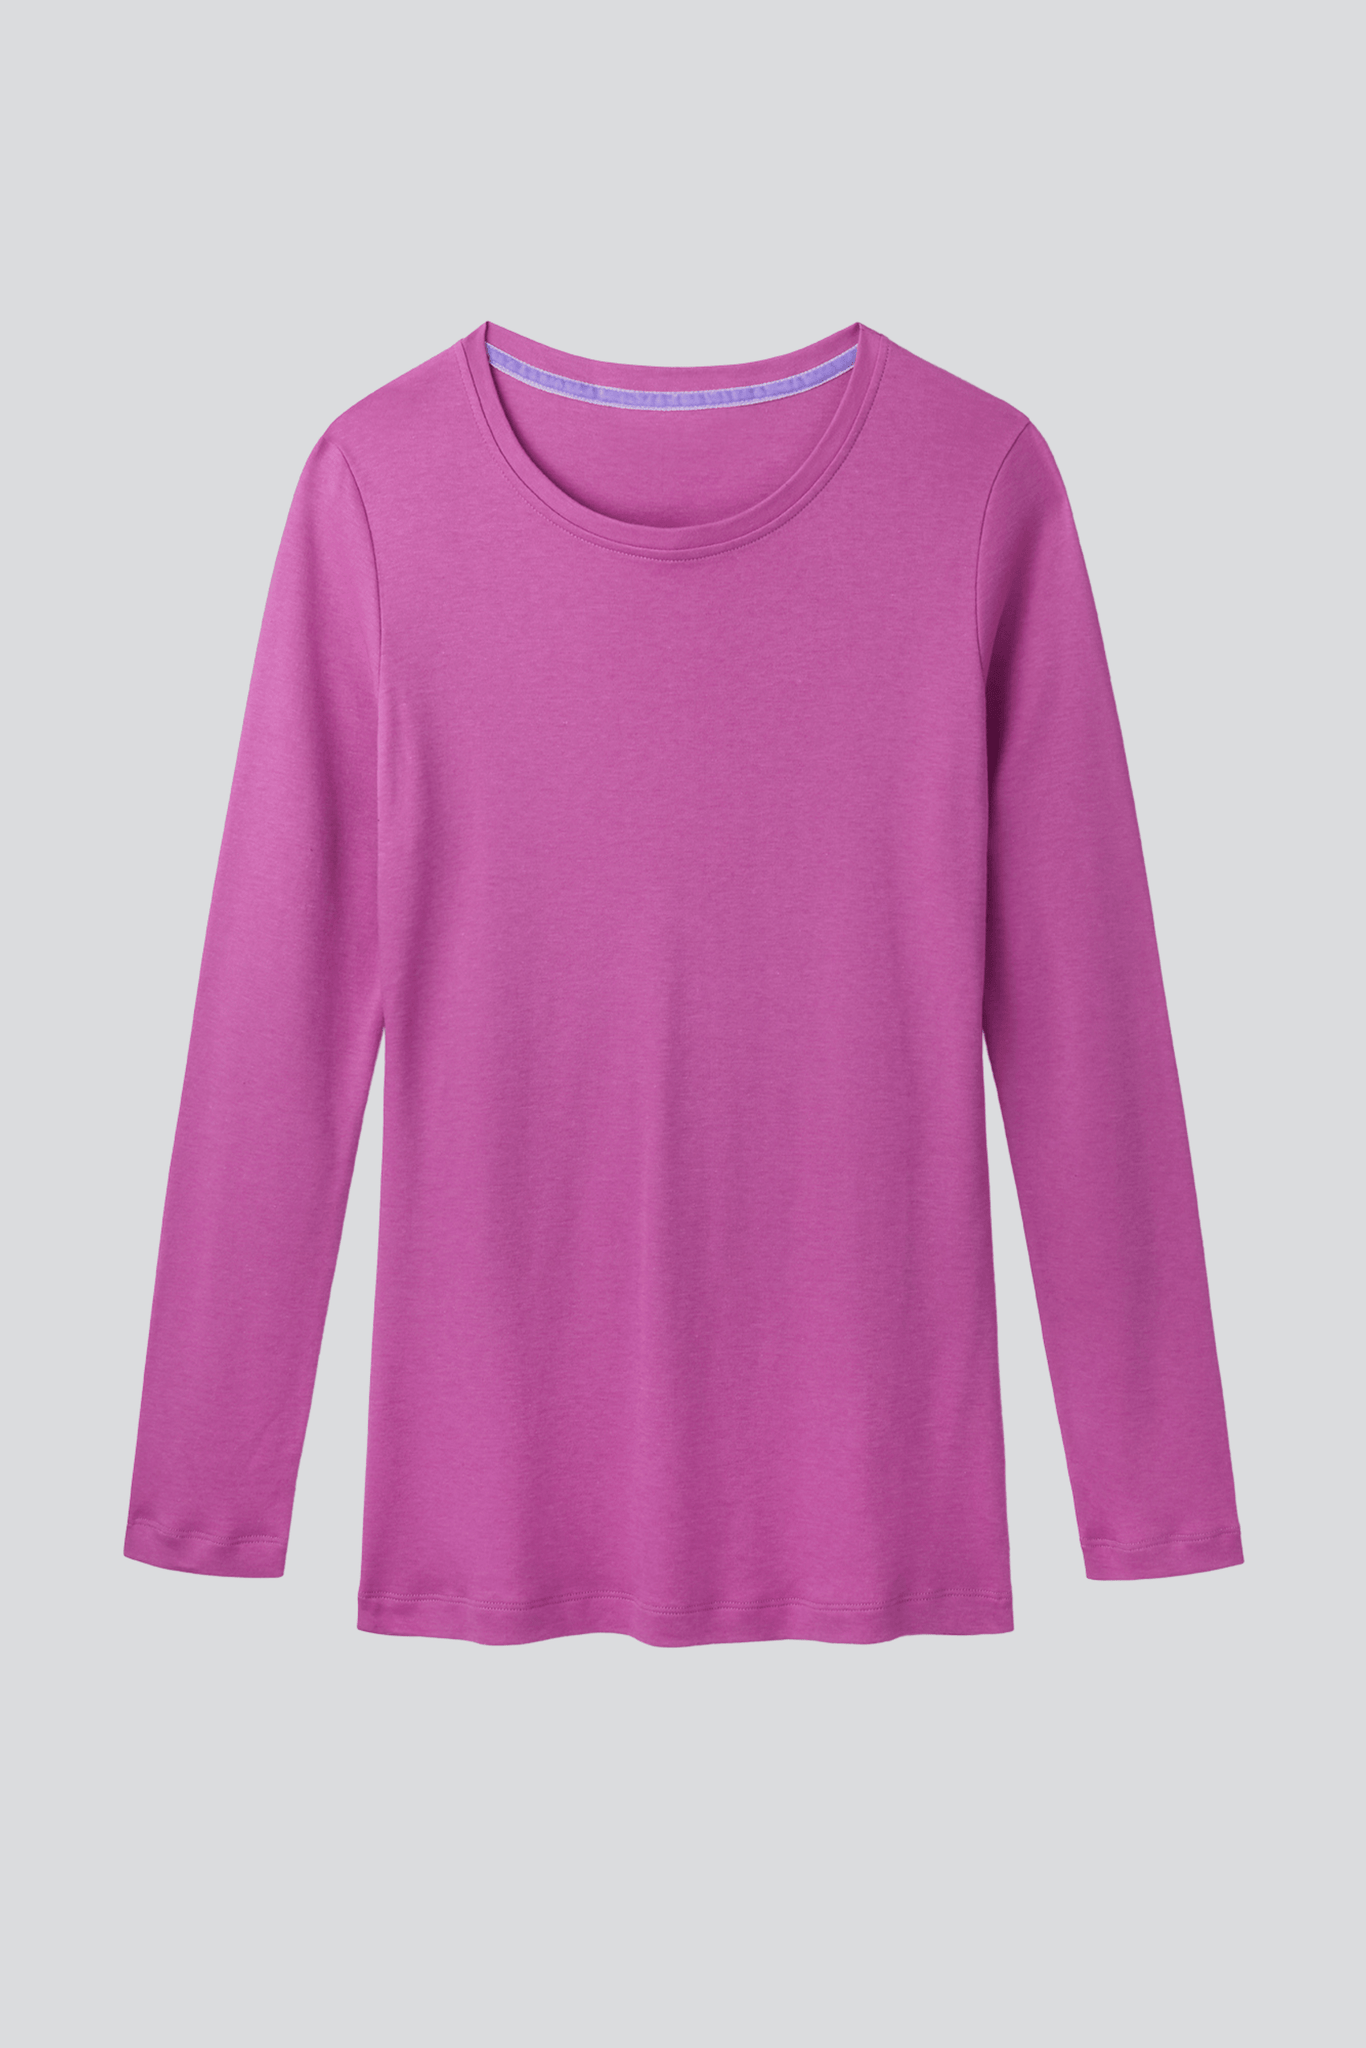 Long Sleeve Crew Neck Cotton Modal Blend T-shirt Women's Long Sleeve T-shirt Lavender Hill